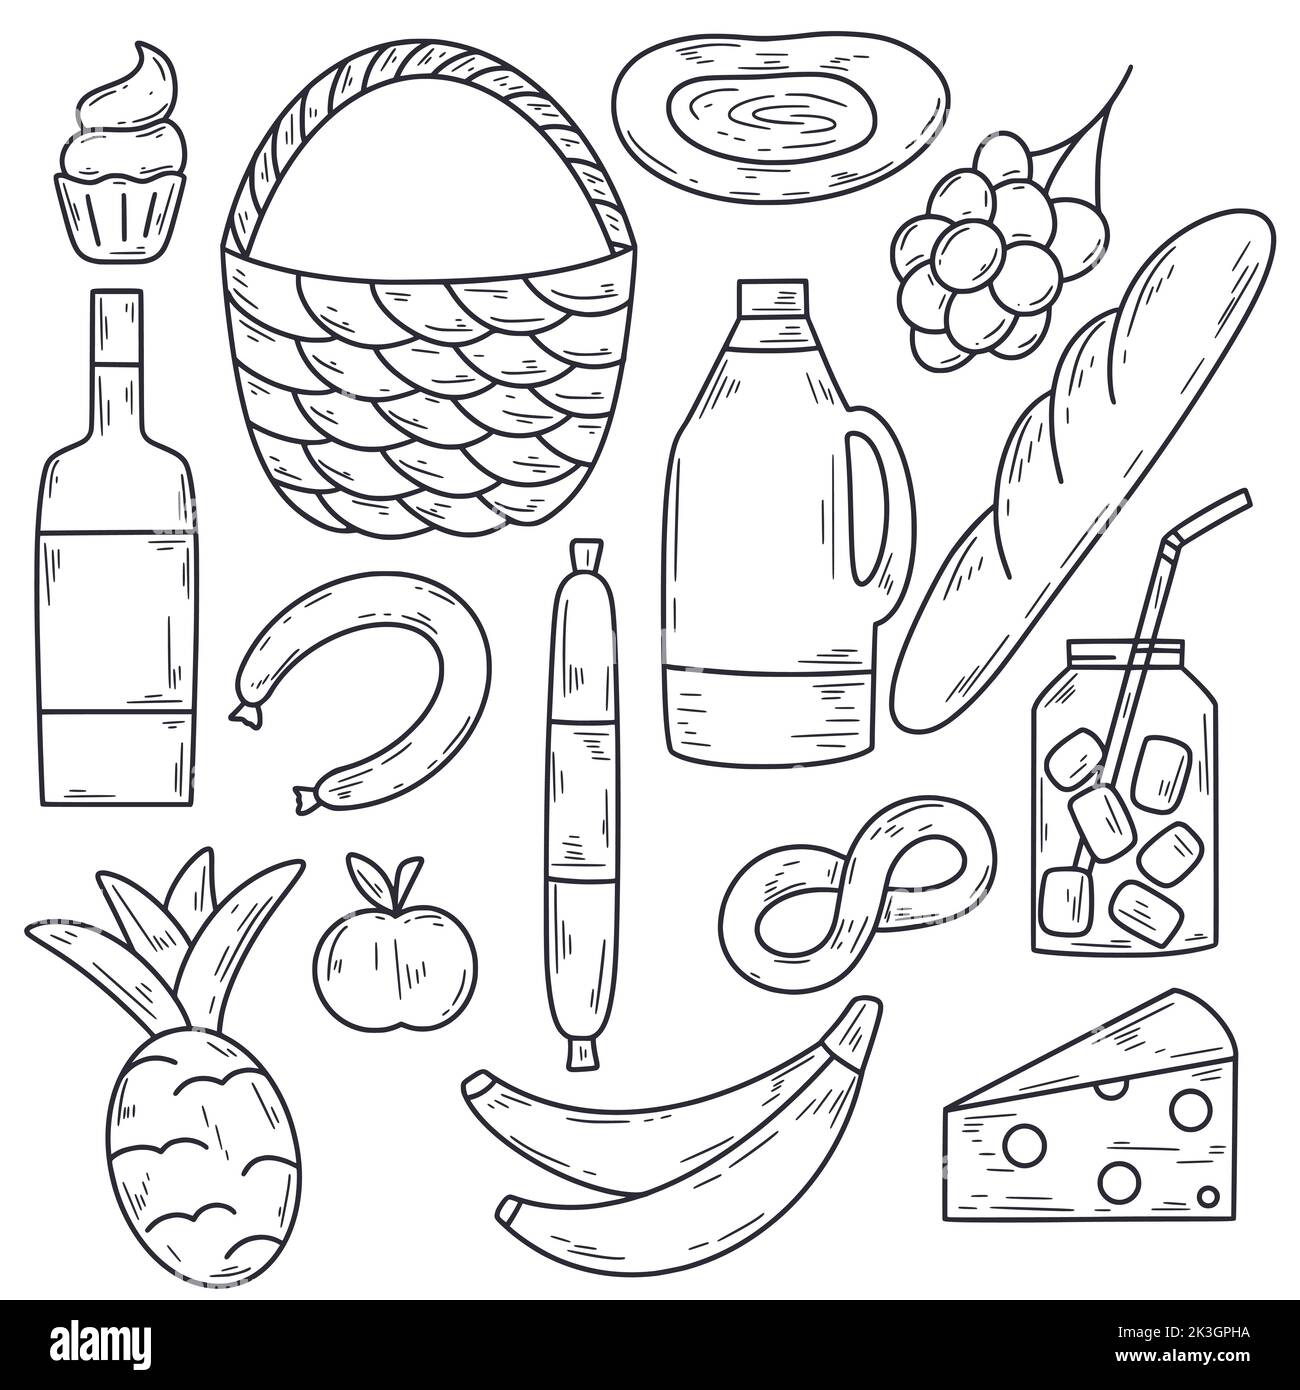 Picknick-Lebensmittel-Doodle-Set. Skizze Elemente für Straße Natur Party isoliert Doodle Illustration. Sammlung von Obst, Wurst, Käse und Getränken von Hand gezogen Stock Vektor